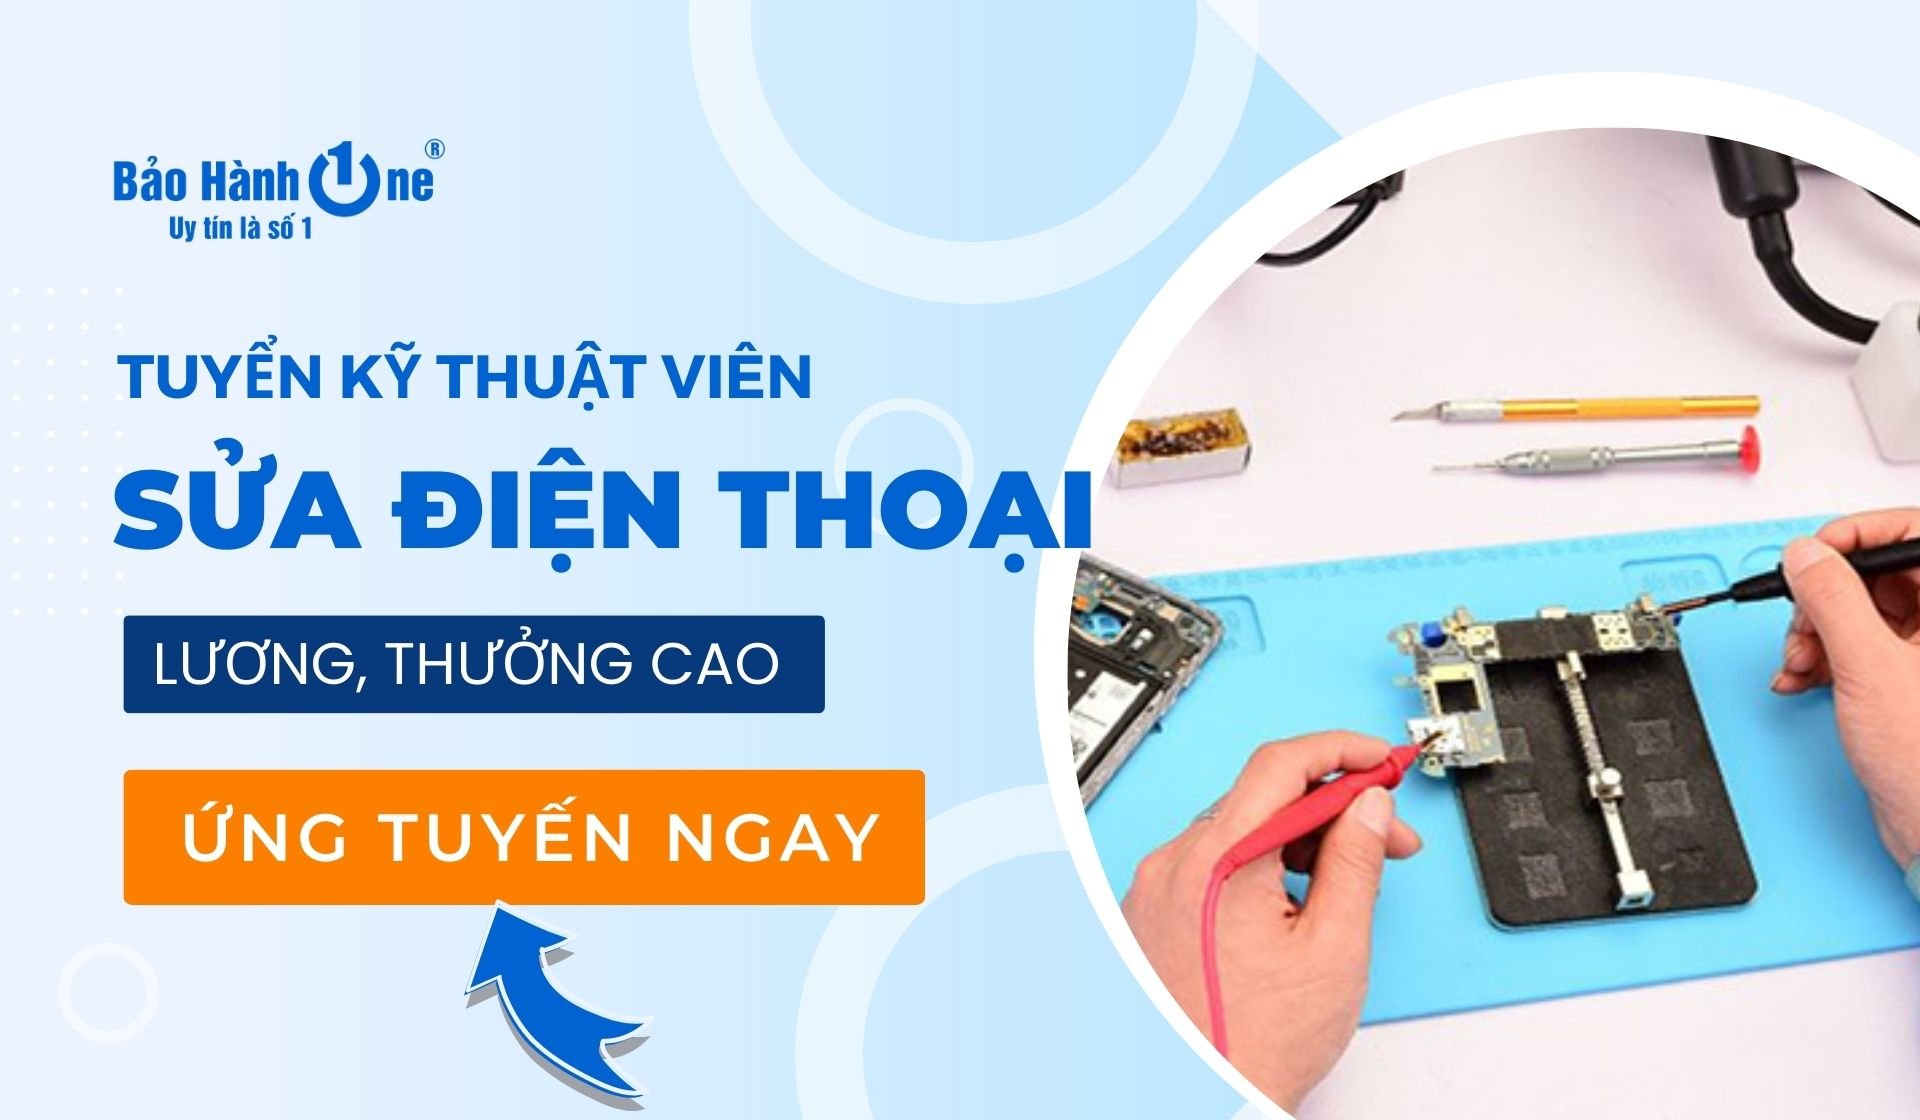 Tuyển dụng Kỹ thuật sửa chữa điện thoại iPhone và Laptop tại Hồ Chí Minh